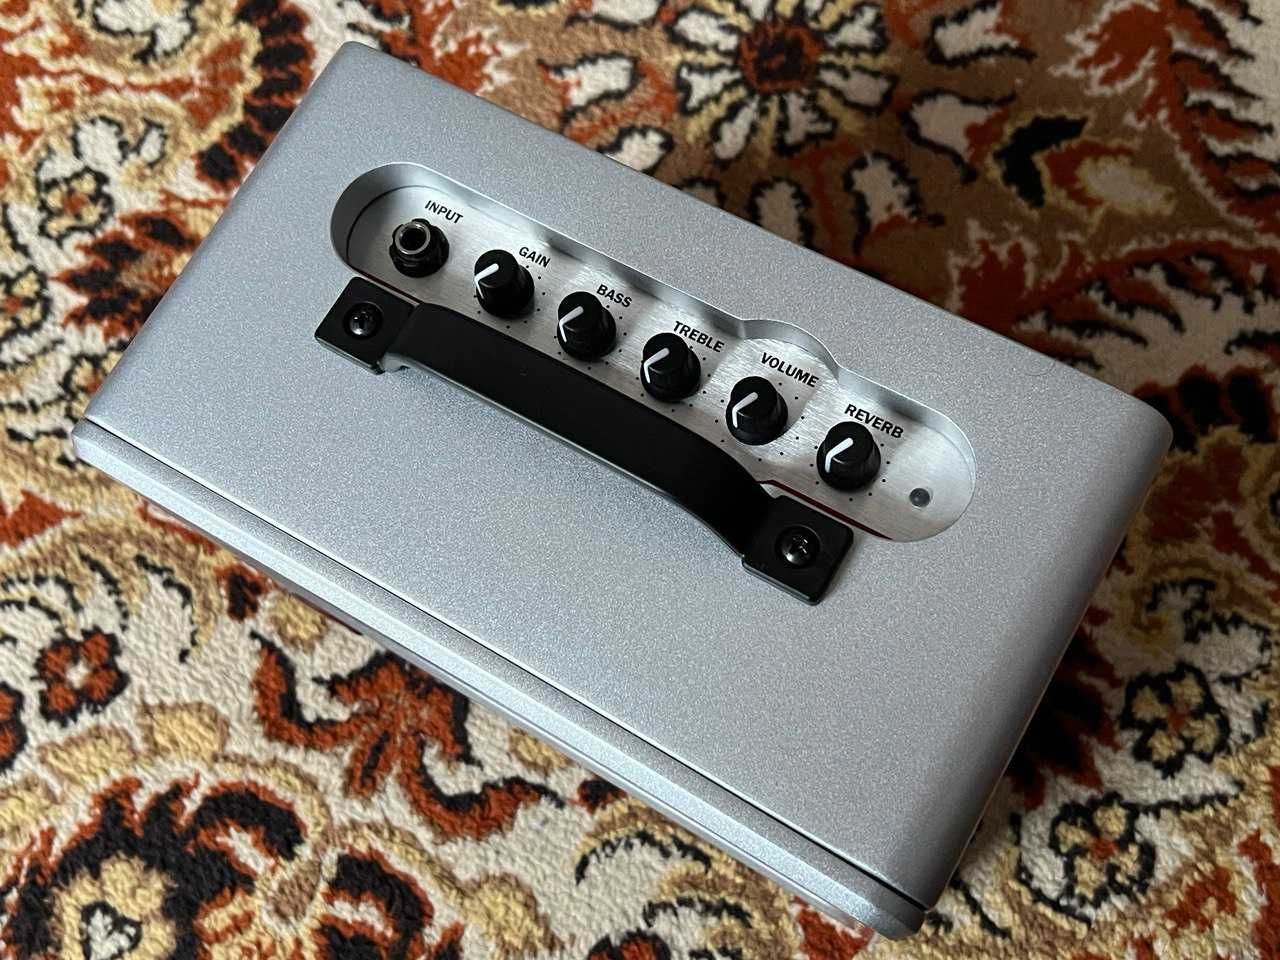 Новий комбік ZT Amplifiers Lunchbox Reverb